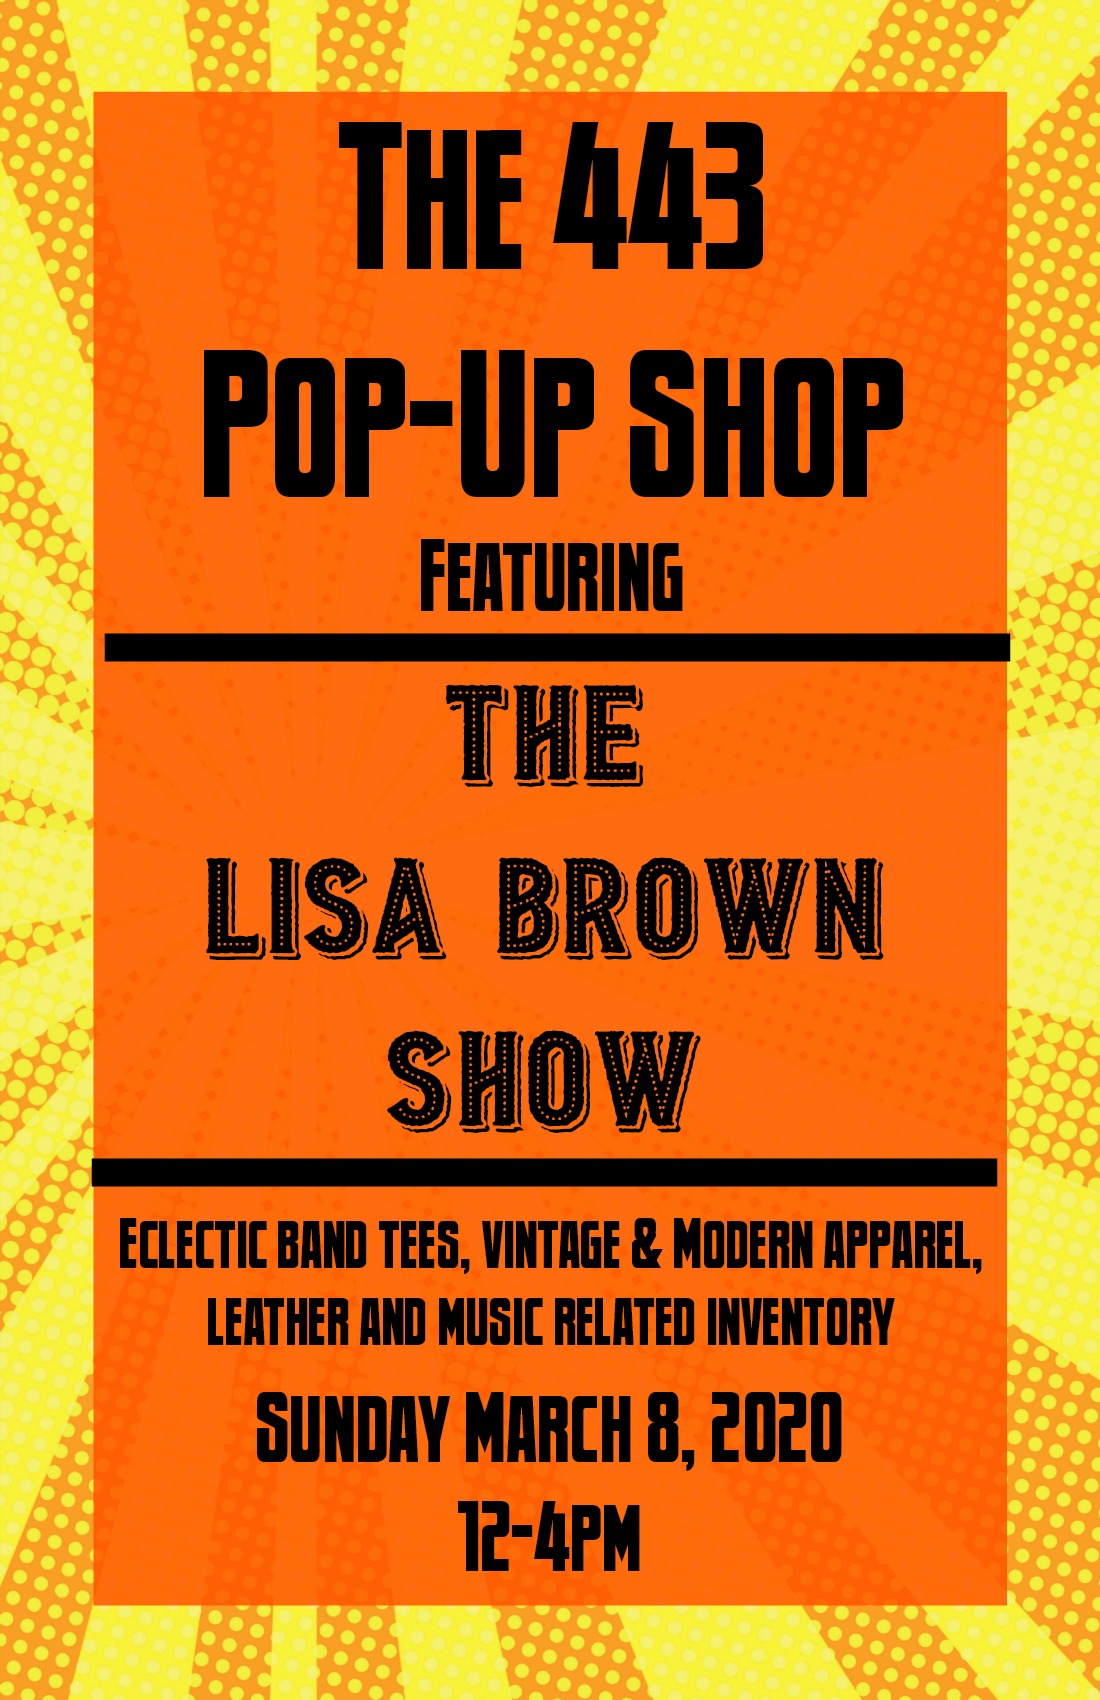 Lisa Brown Show